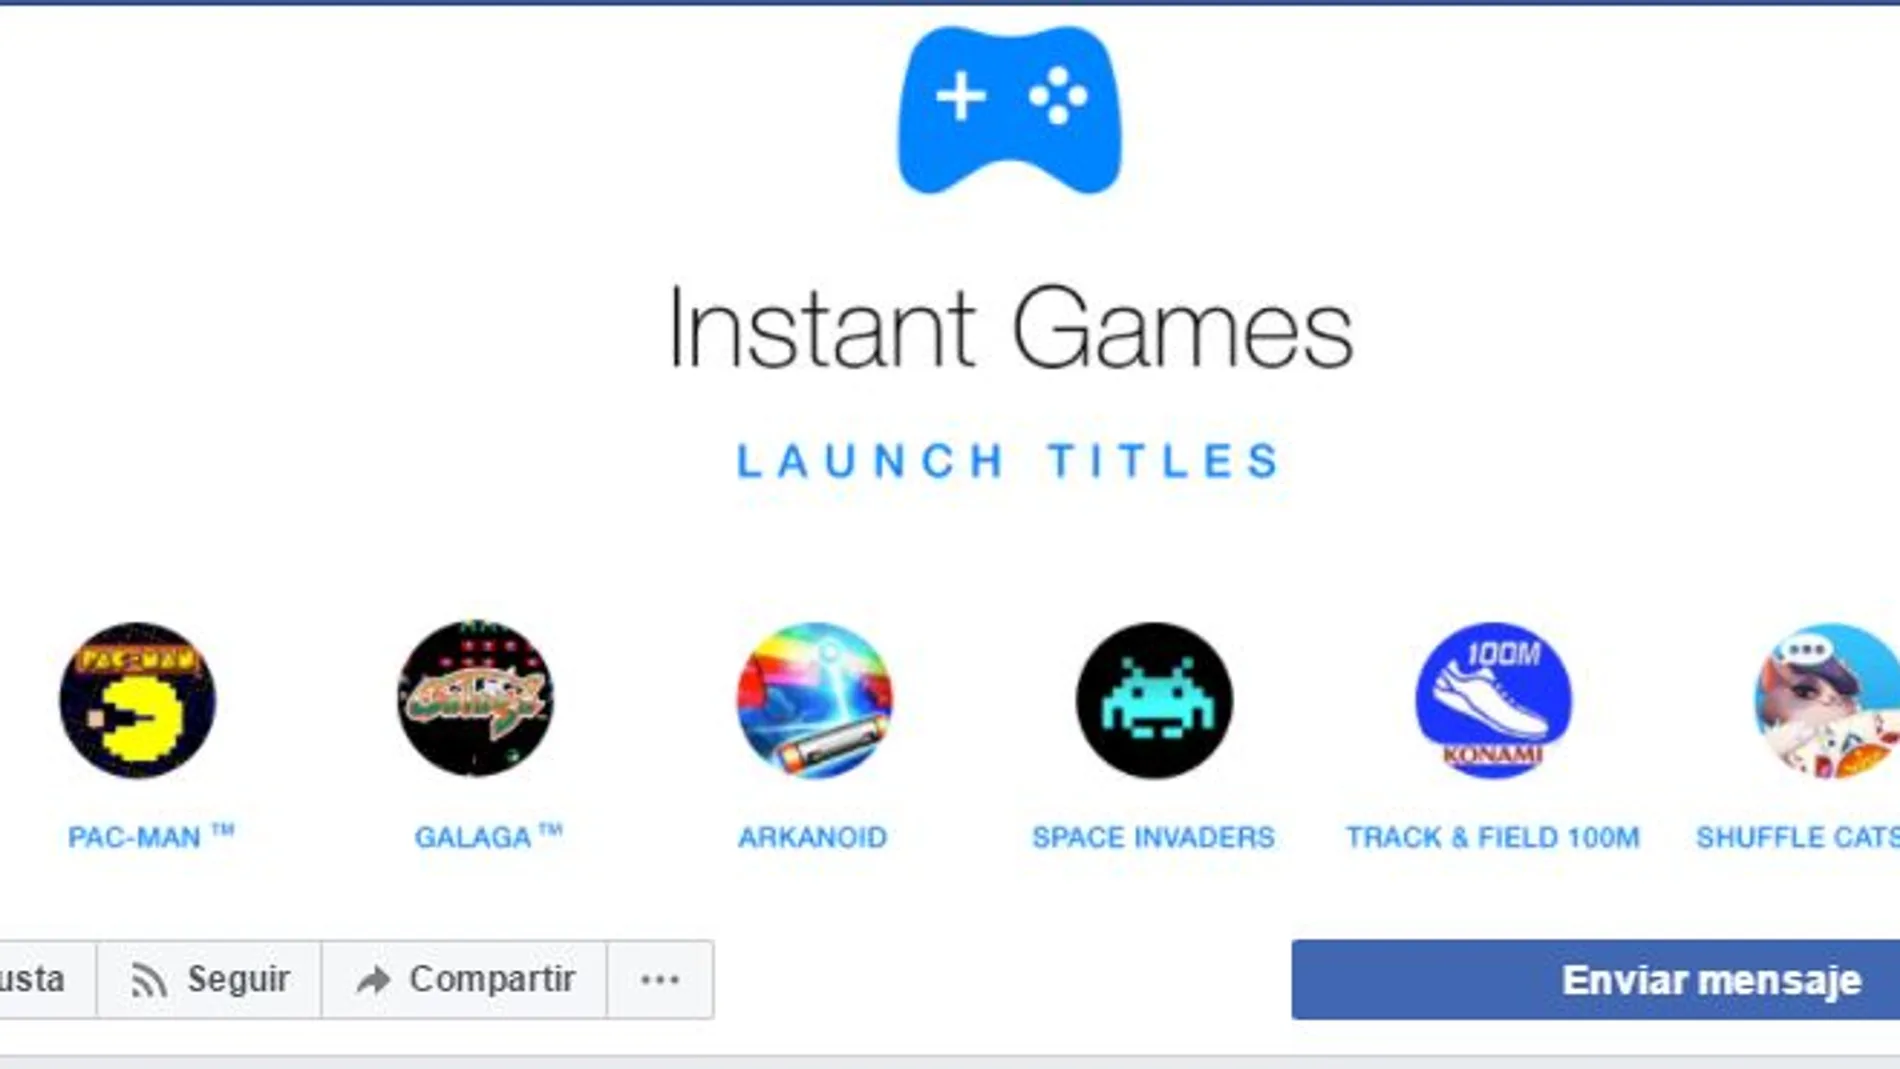 Facebook va a ampliar su lista de Instant Games